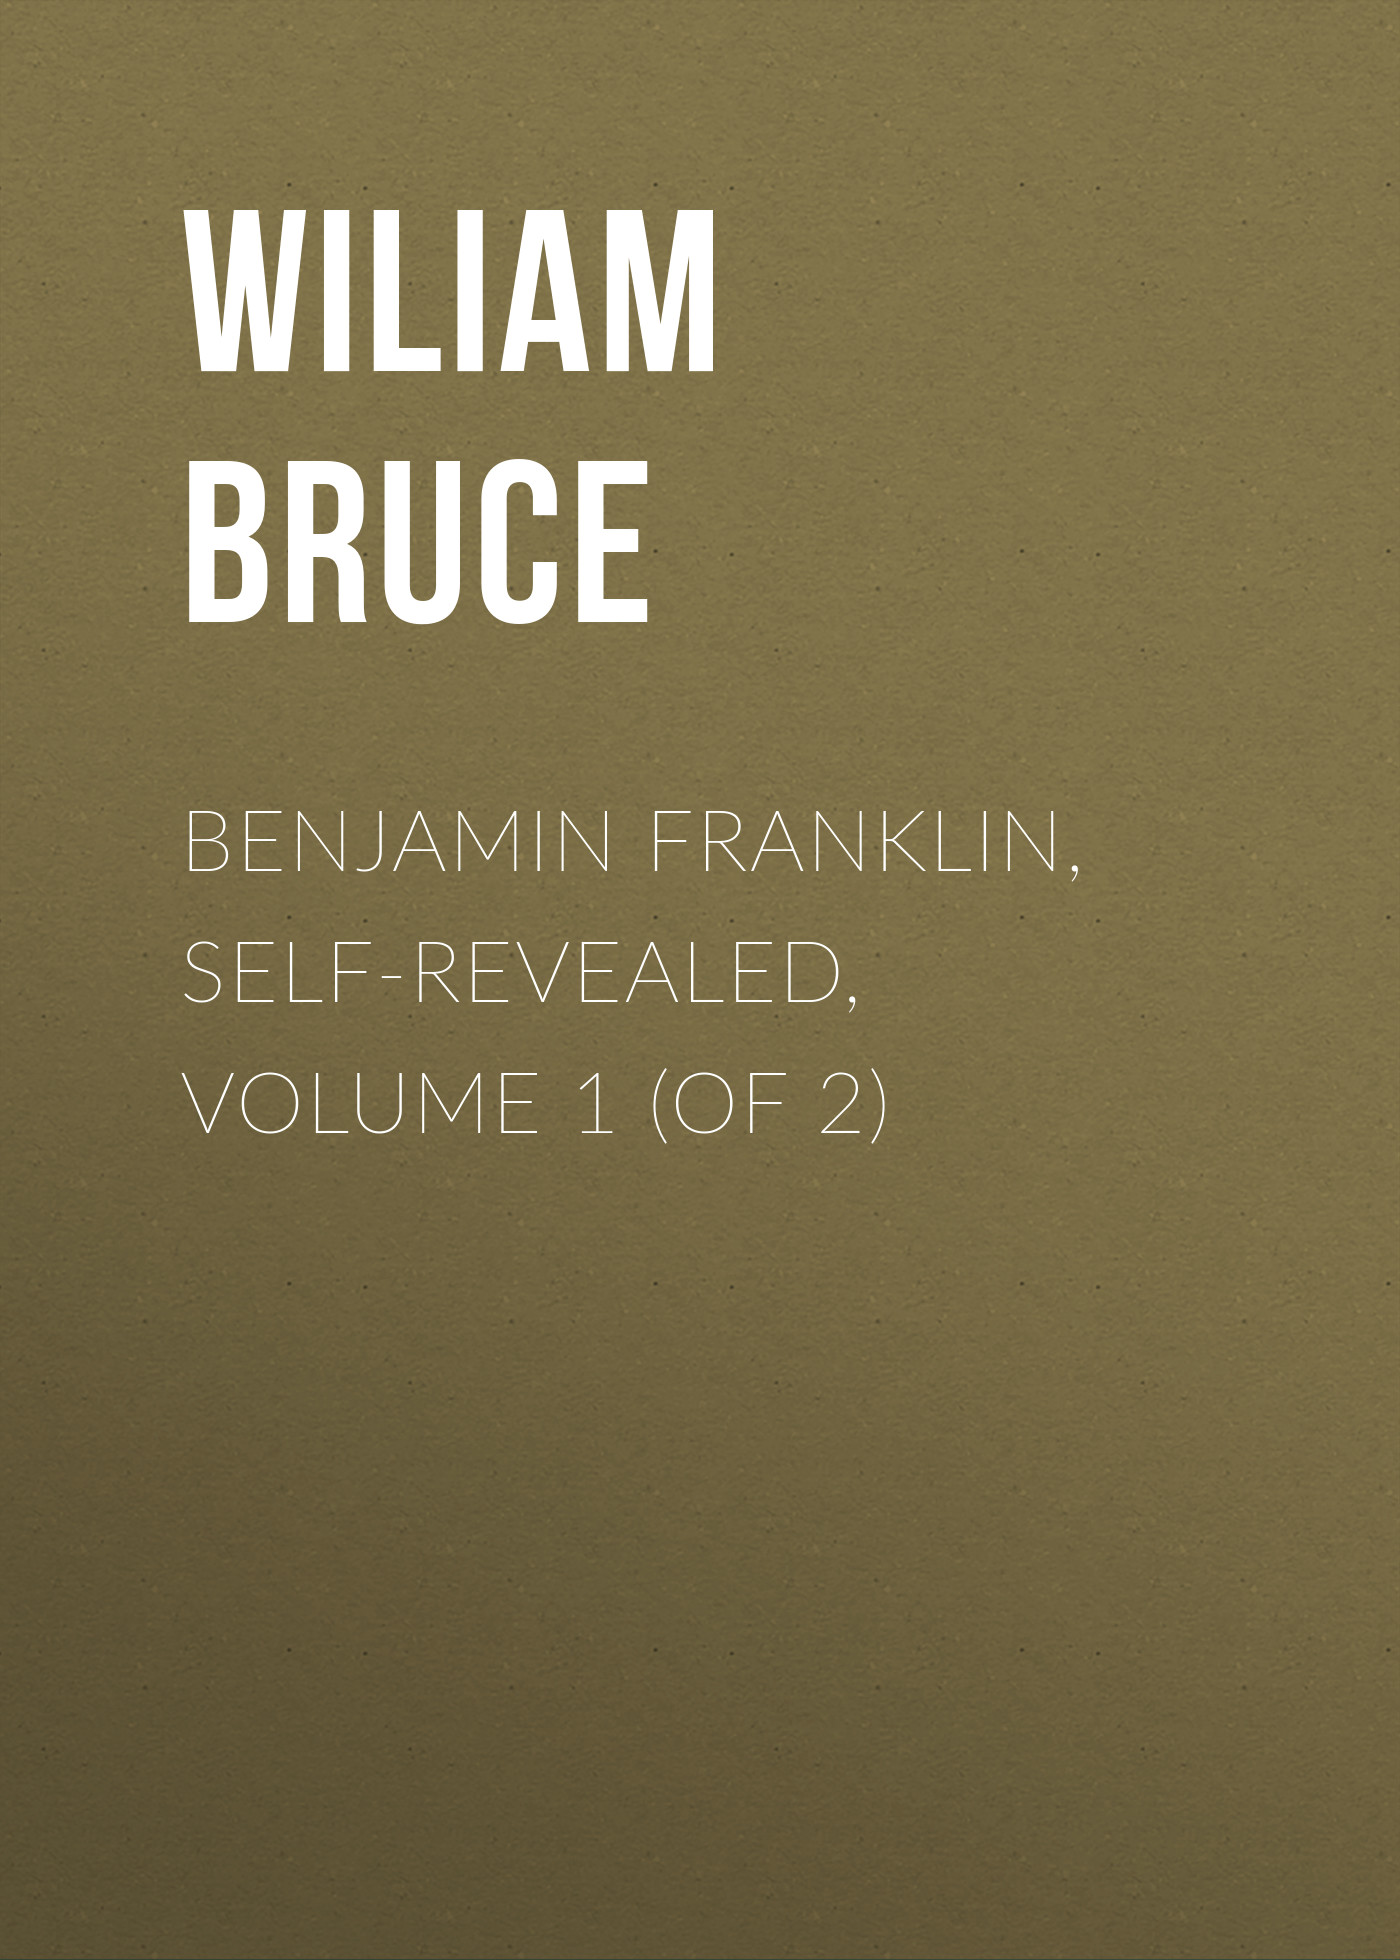 Книга Benjamin Franklin, Self-Revealed, Volume 1 (of 2) из серии , созданная Wiliam Bruce, может относится к жанру Зарубежная старинная литература, Зарубежная классика. Стоимость электронной книги Benjamin Franklin, Self-Revealed, Volume 1 (of 2) с идентификатором 24170004 составляет 0 руб.